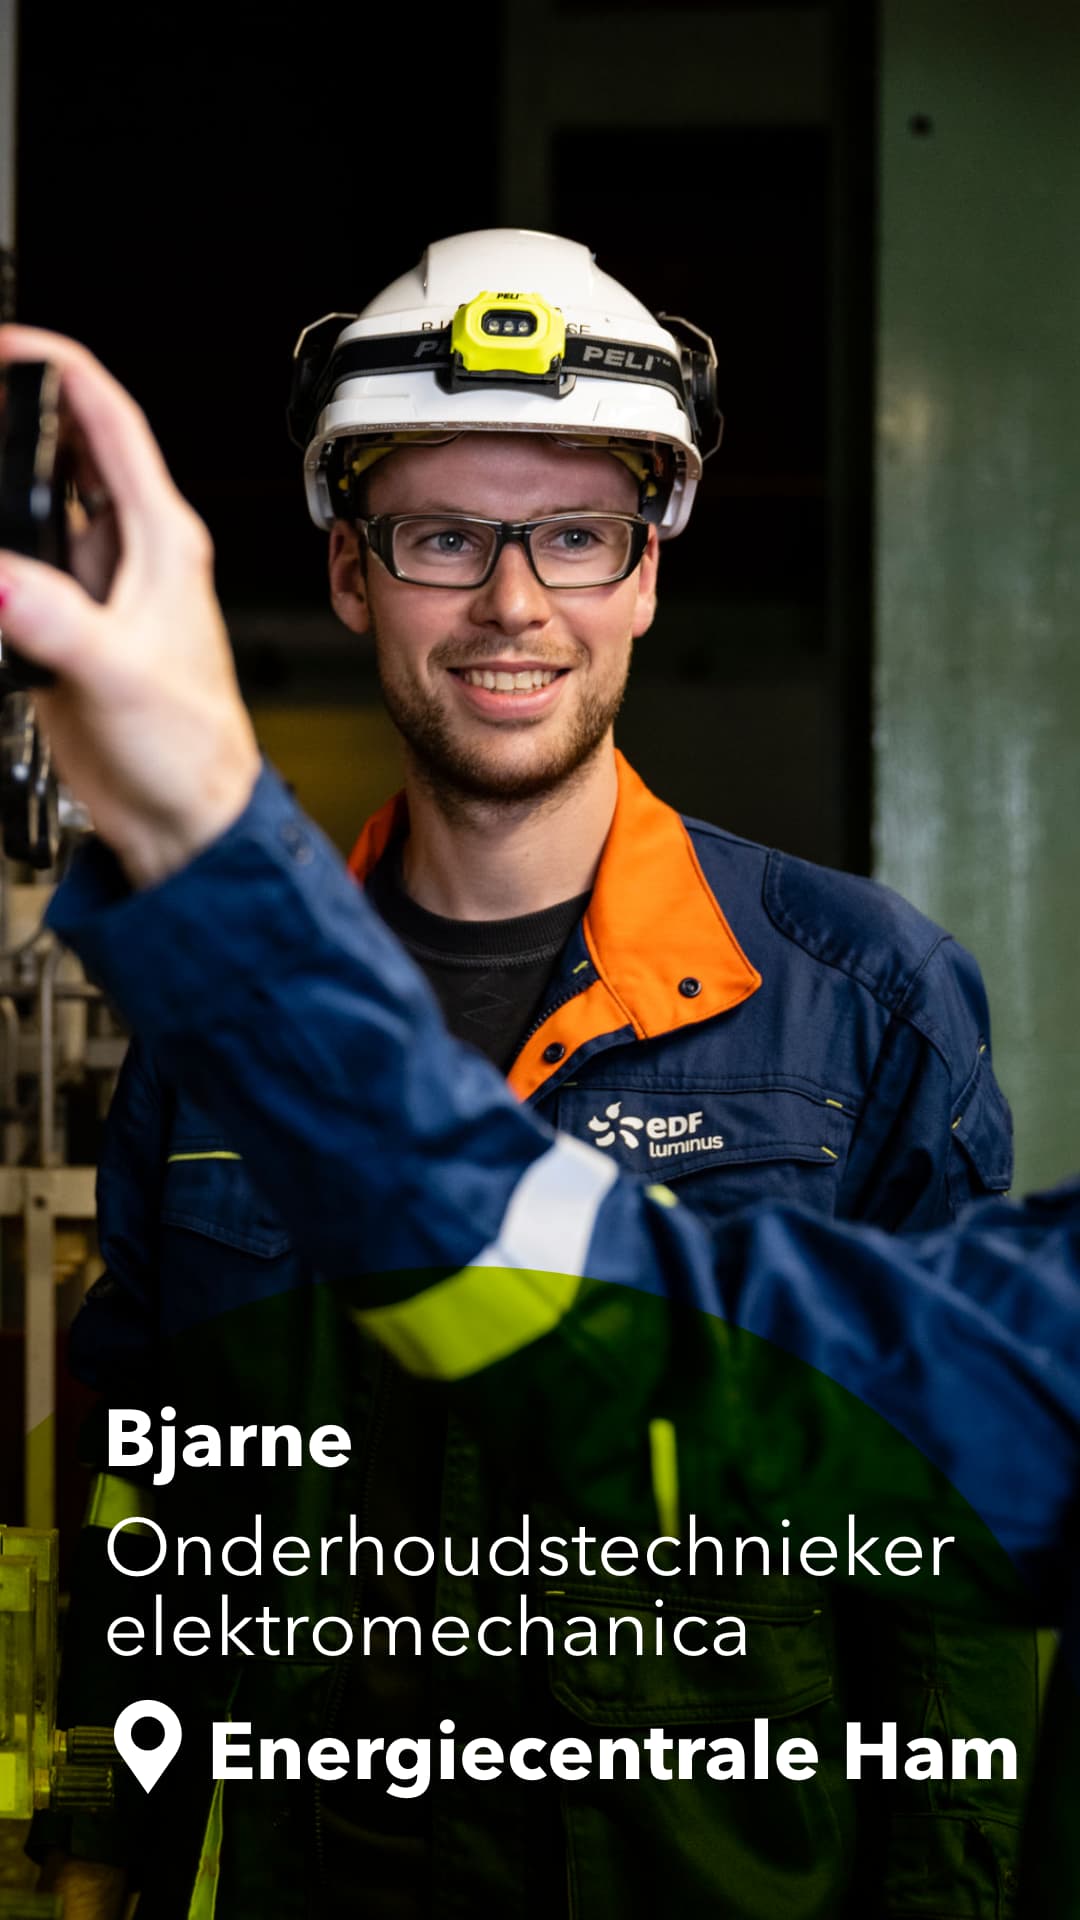 Bjarne - Onderhoudstechnieker elektromechanica - Energiecentrale Ham